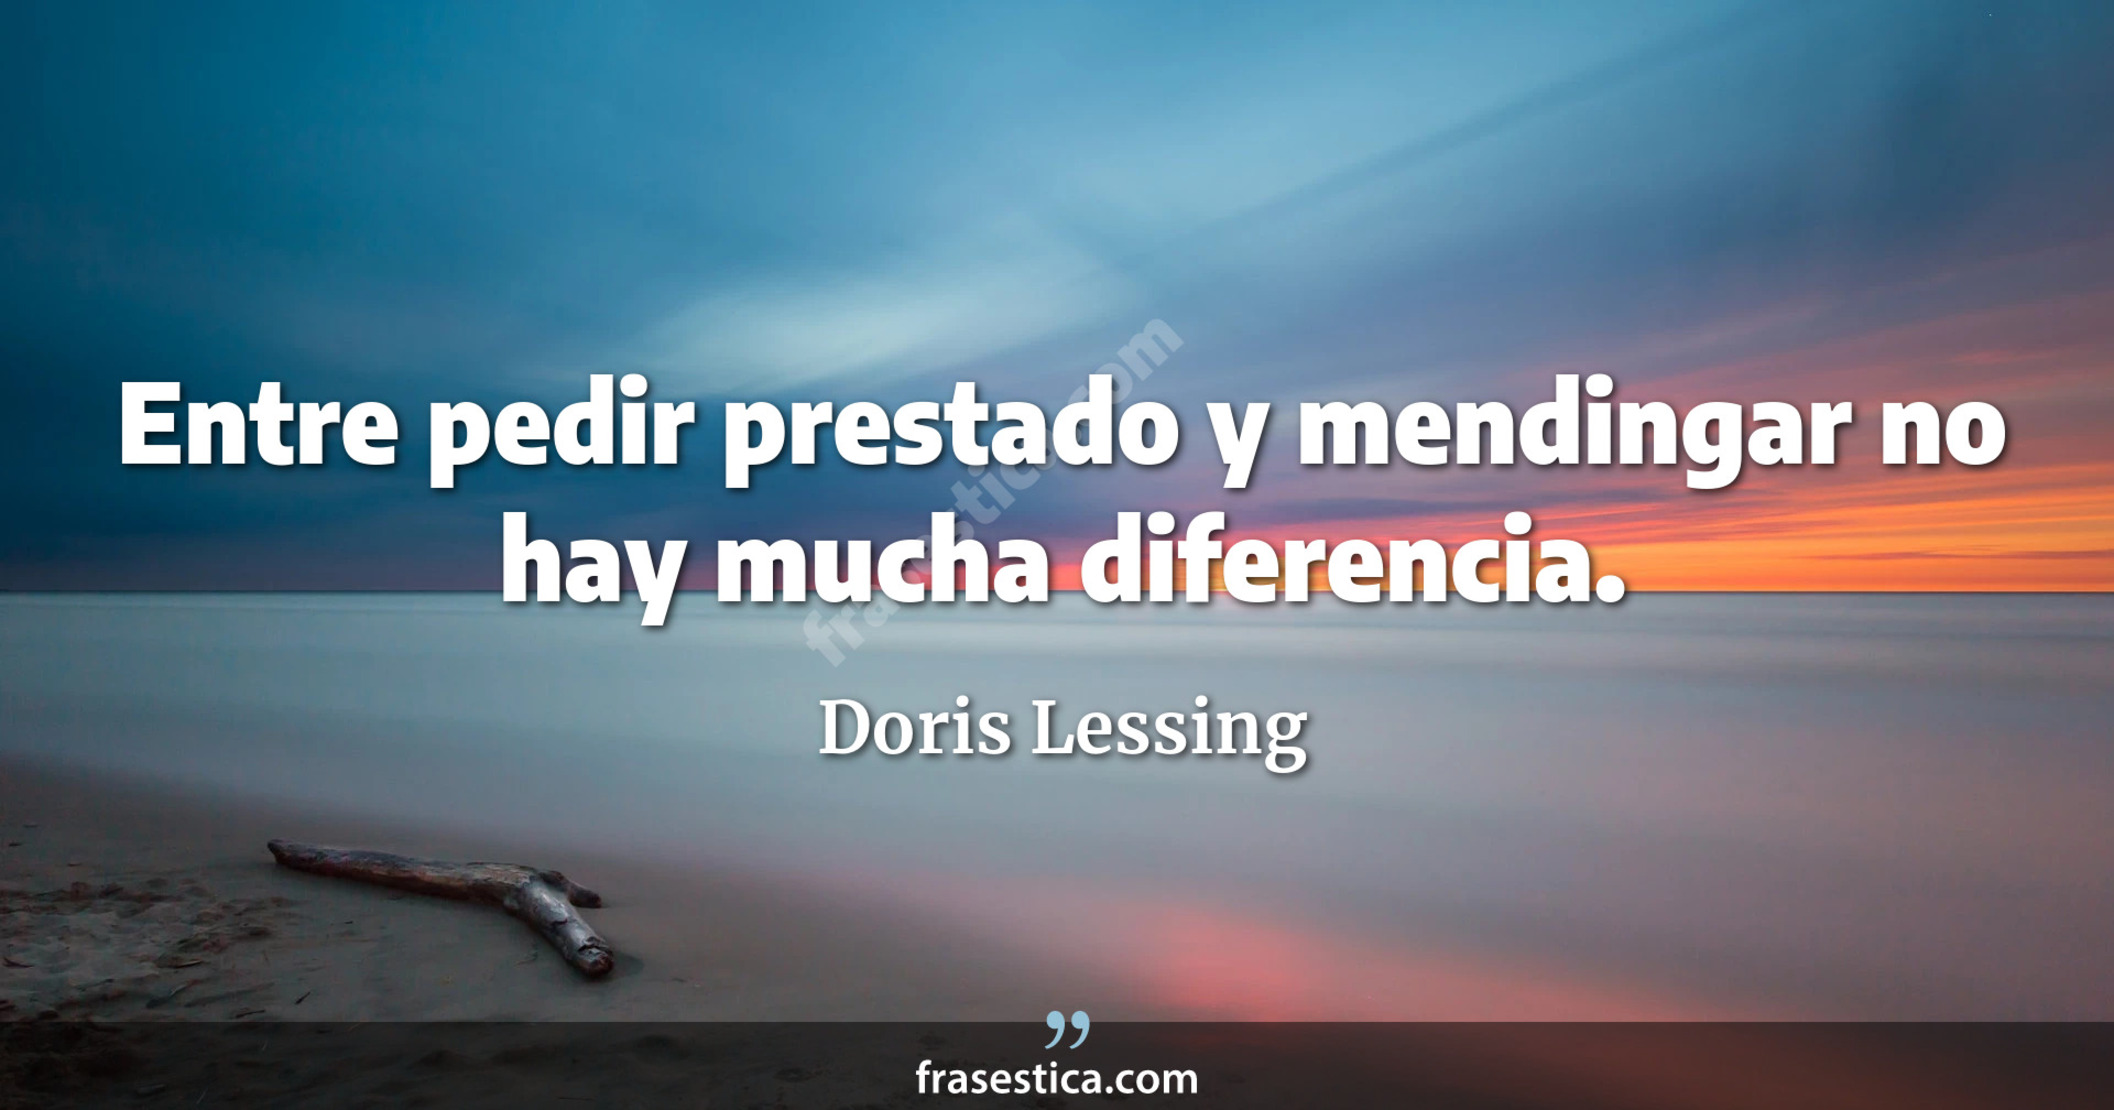 Entre pedir prestado y mendingar no hay mucha diferencia. - Doris Lessing